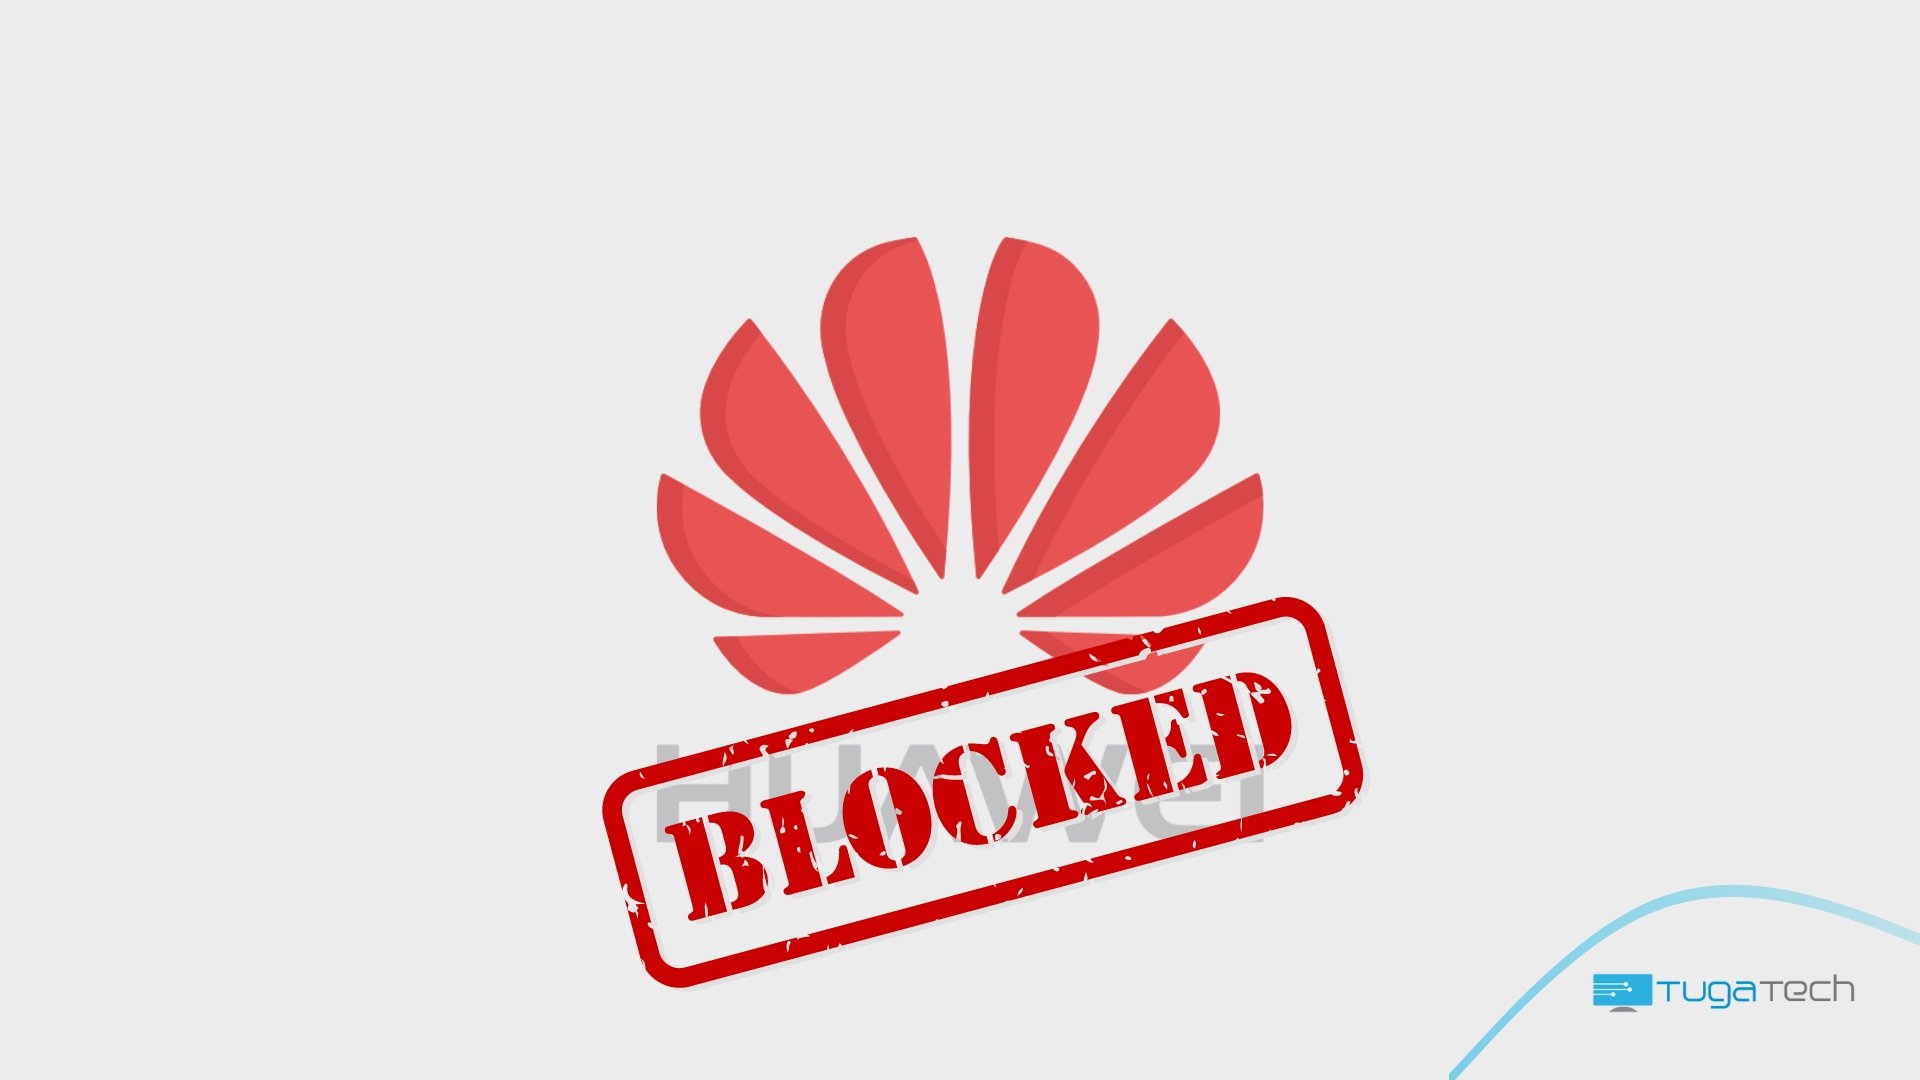 Logo da Huawei com sinal de bloqueada